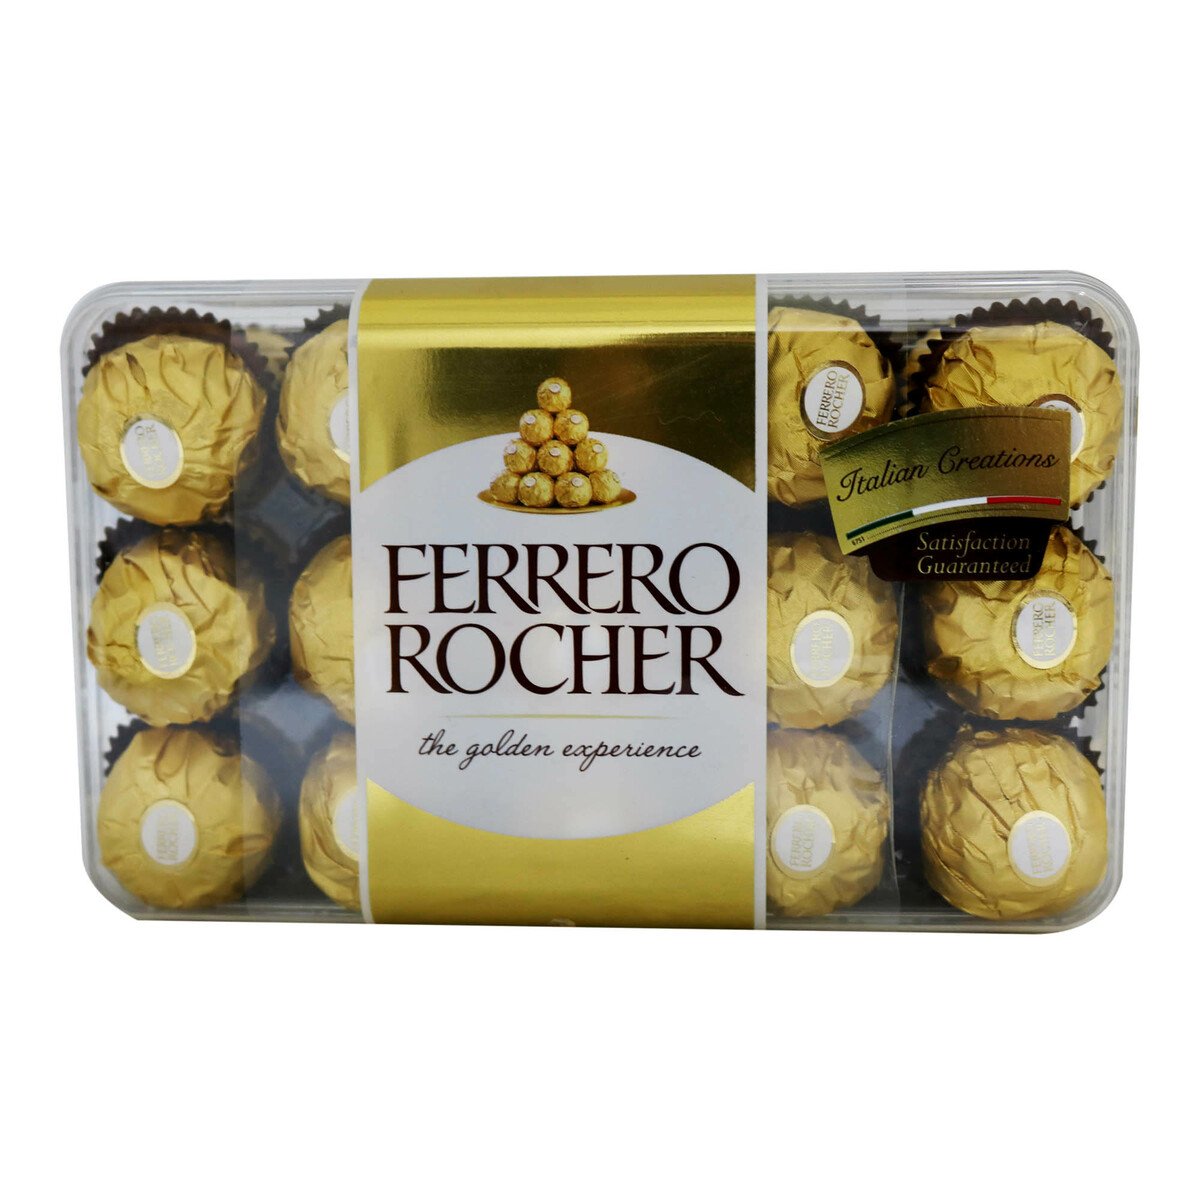 Ferrero rocher T30